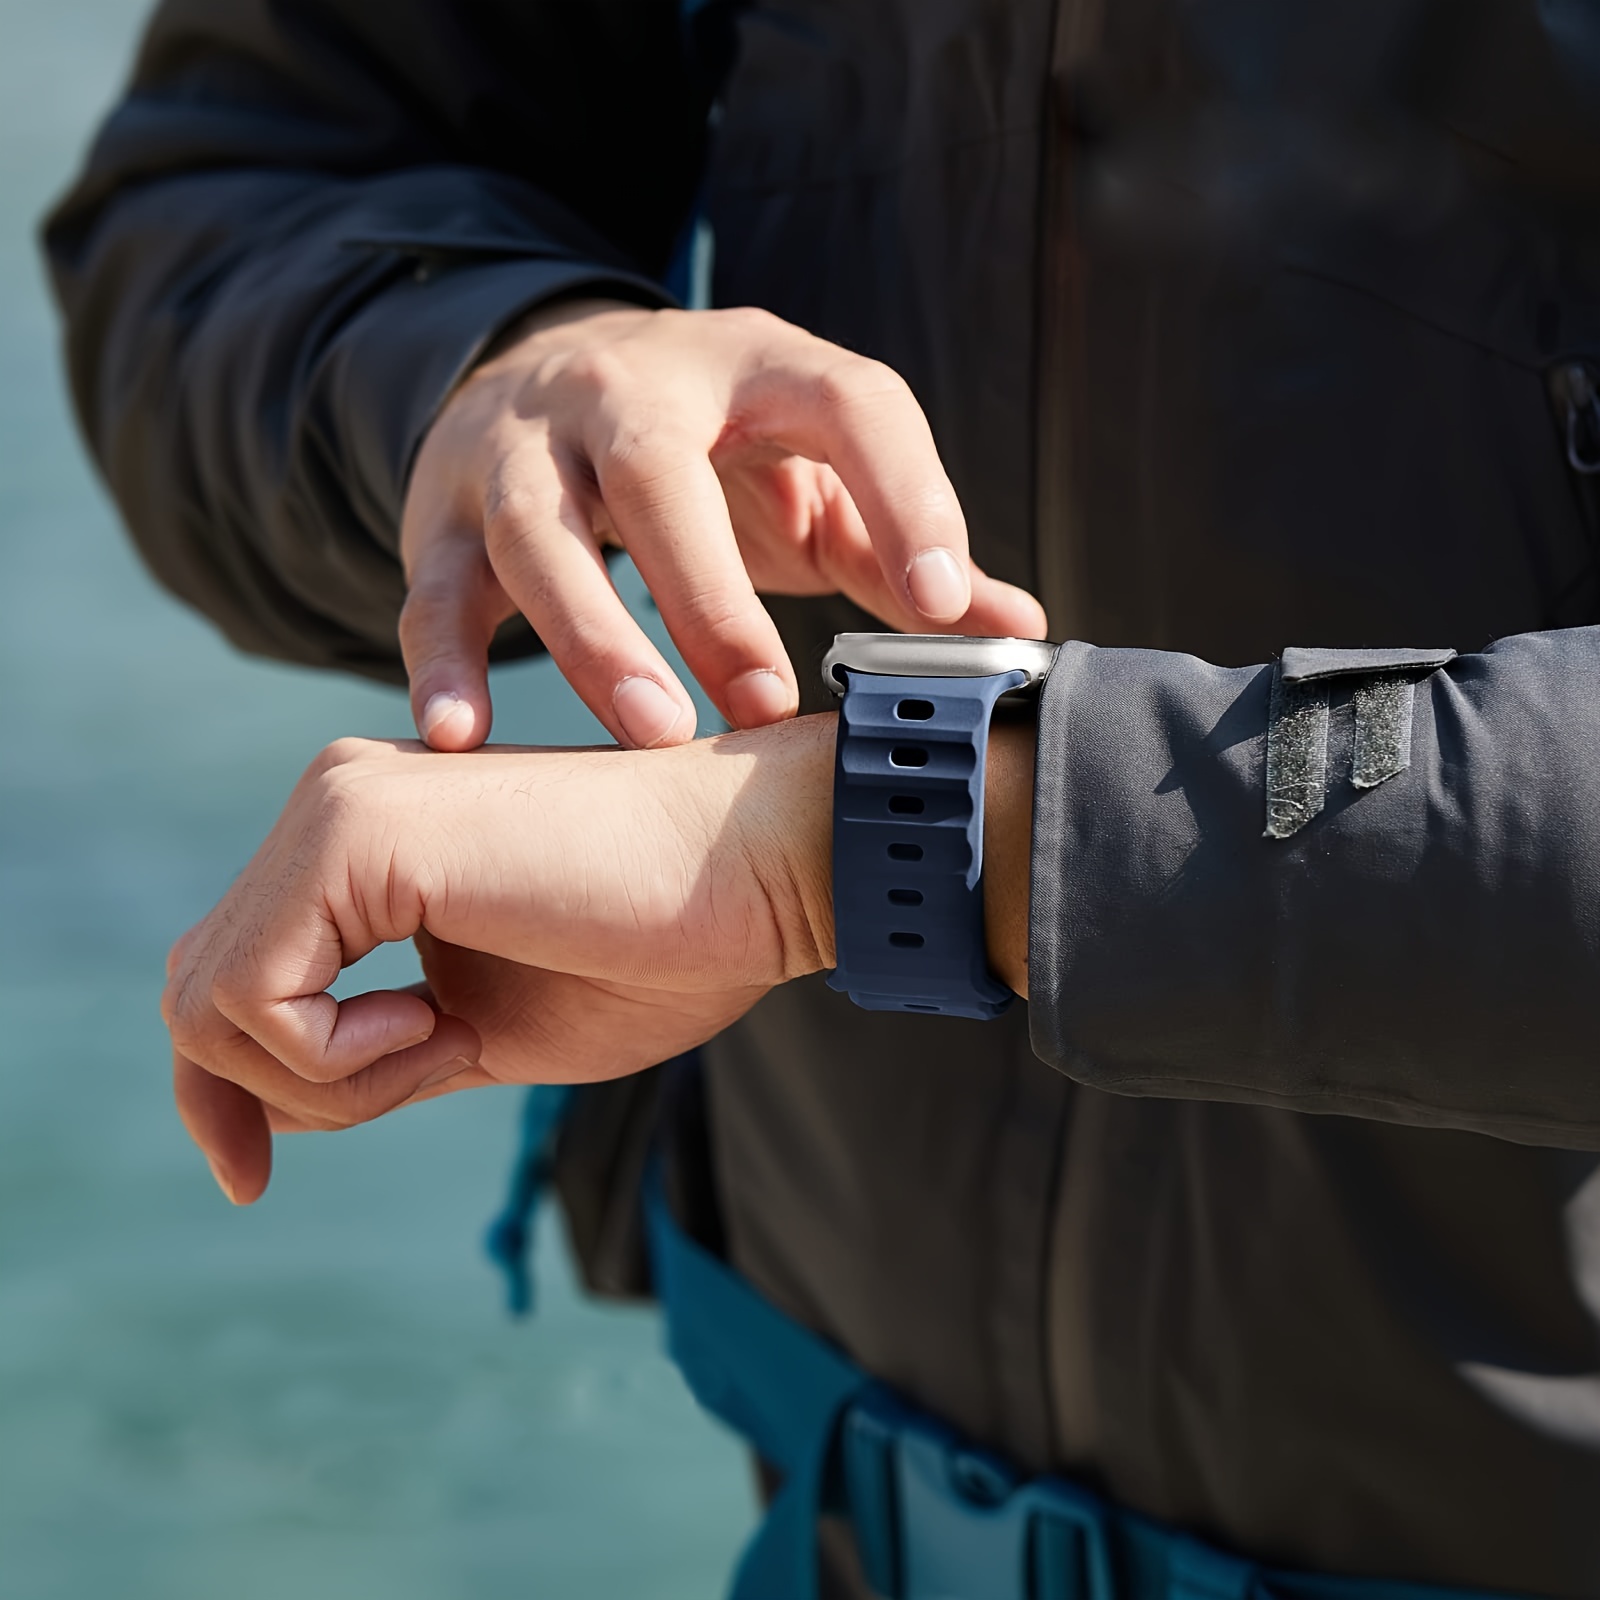 Acheter Bracelet de montre de sport en Silicone, pour Garmin